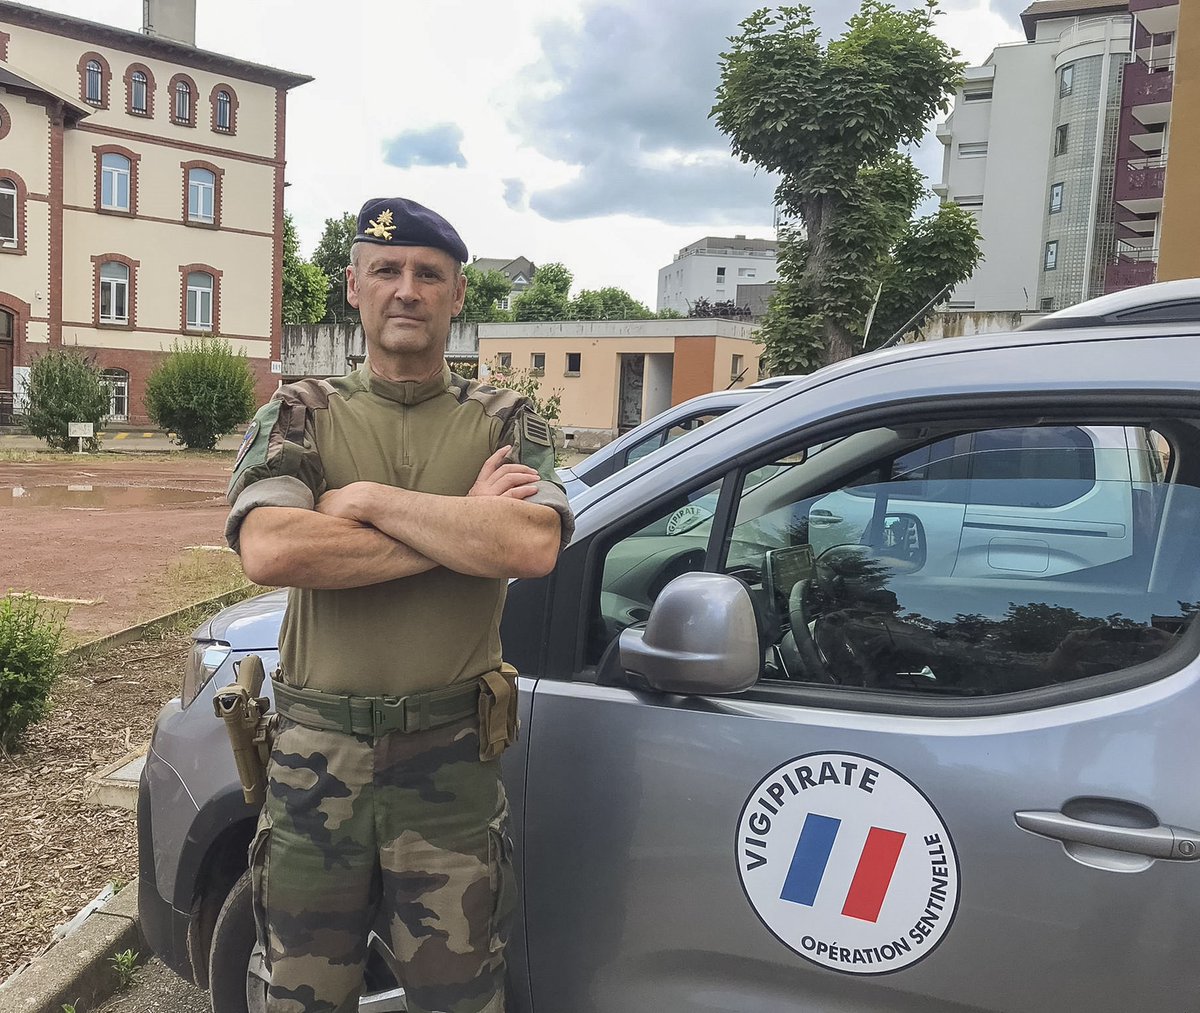 Portrait du commandant Franck, chef de l'état-major tactique Sentinelle déployé à Strasbourg. Opérationnel... et réserviste ! Comme leurs camarades d'active, nos réservistes occupent des responsabilités en opérations. #RéserveTerre #RéservistesOps #NotreDefense